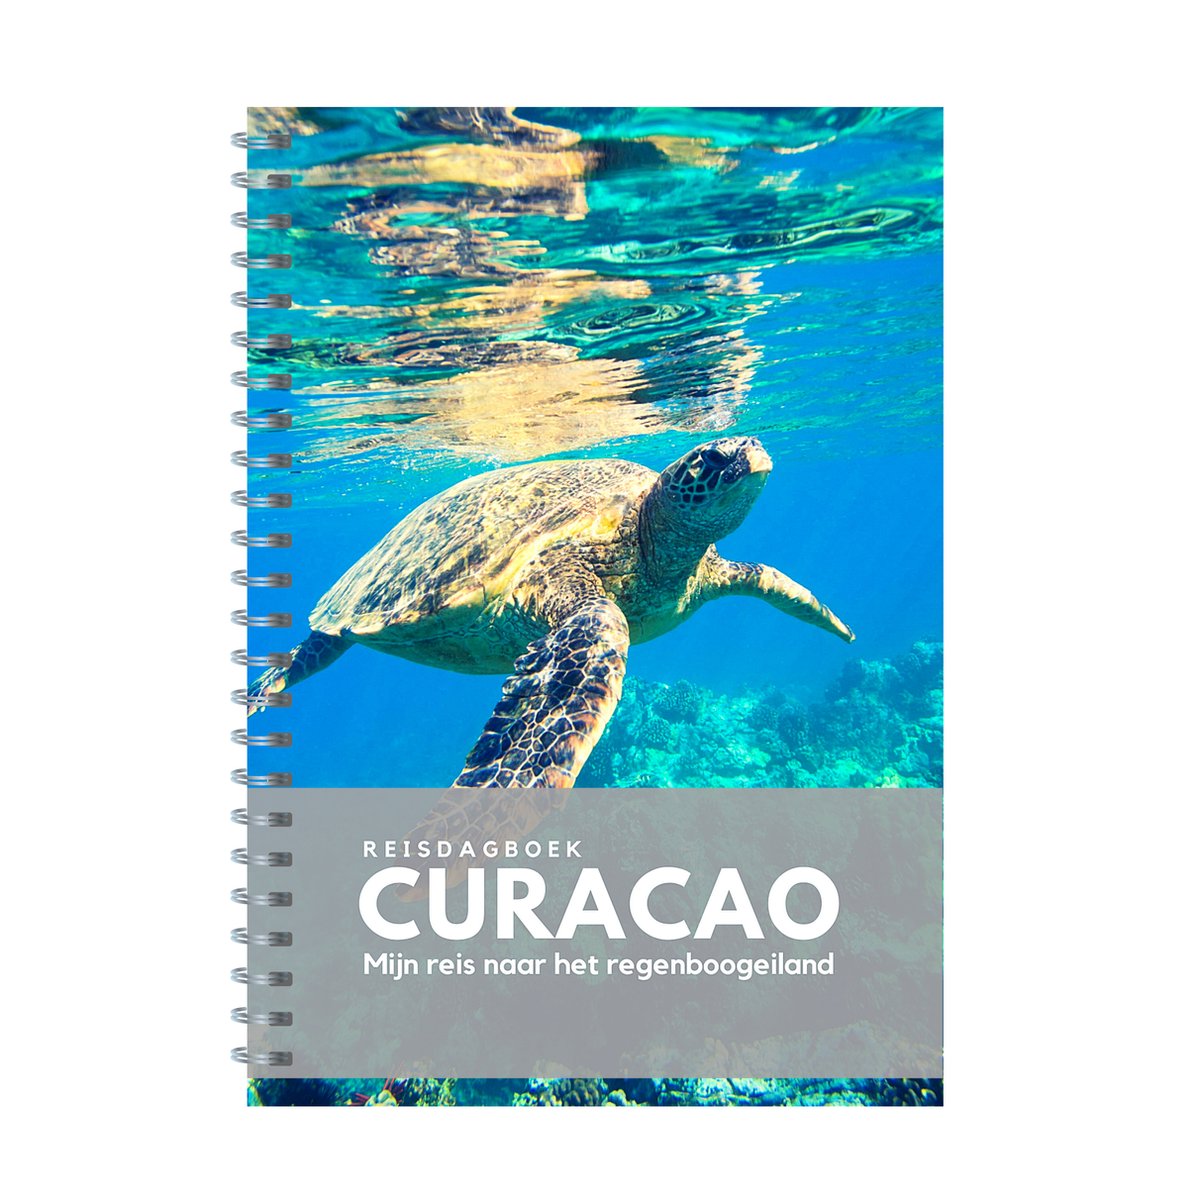 Reisdagboek Curaçao - schrijf je eigen reisboek